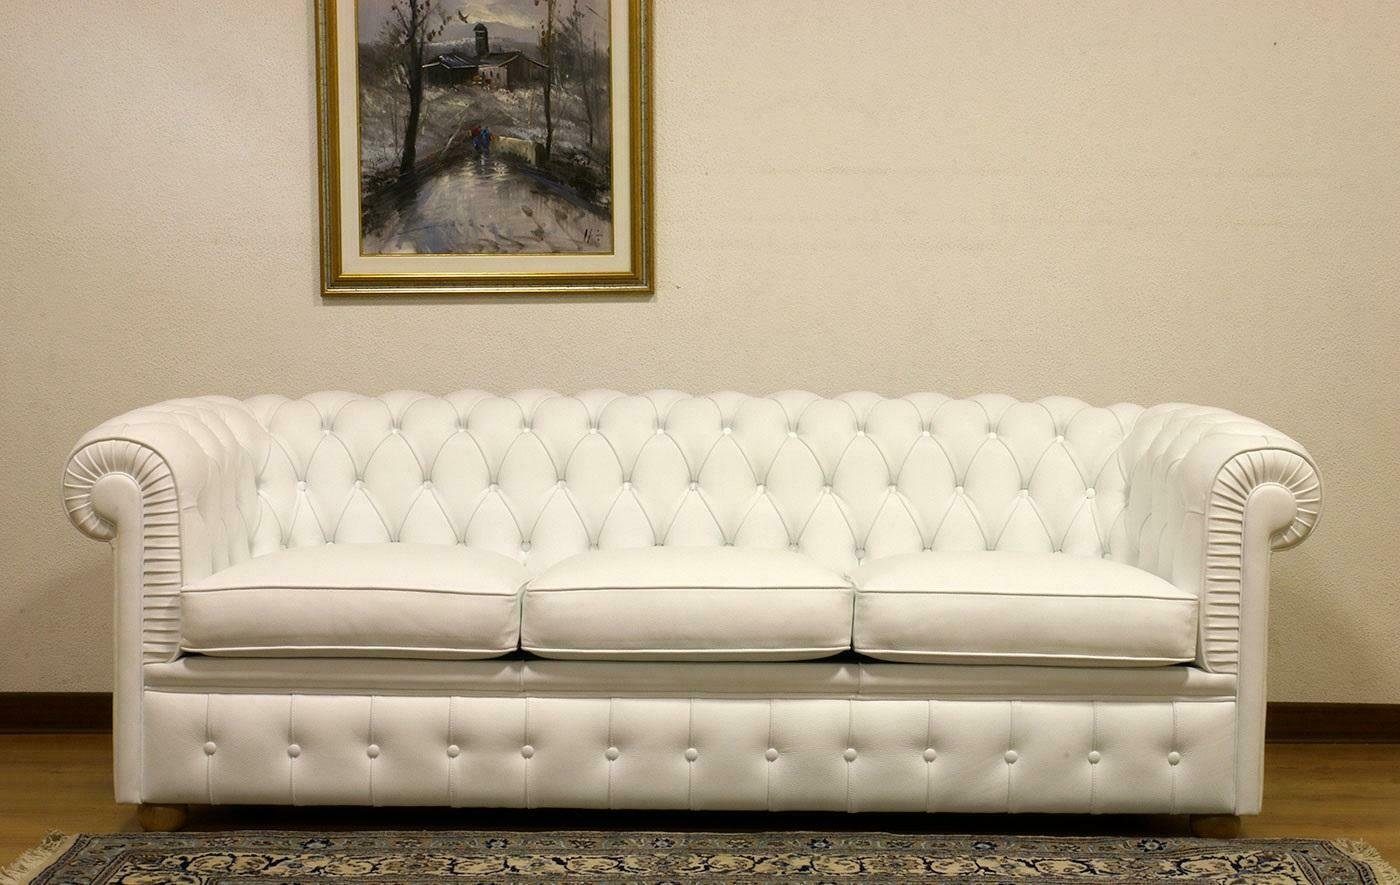 JVmoebel 3-Sitzer Design Chesterfield Sofagarnitur Couch Weiß Made in Leder Polster, Europe 3-Sitzer